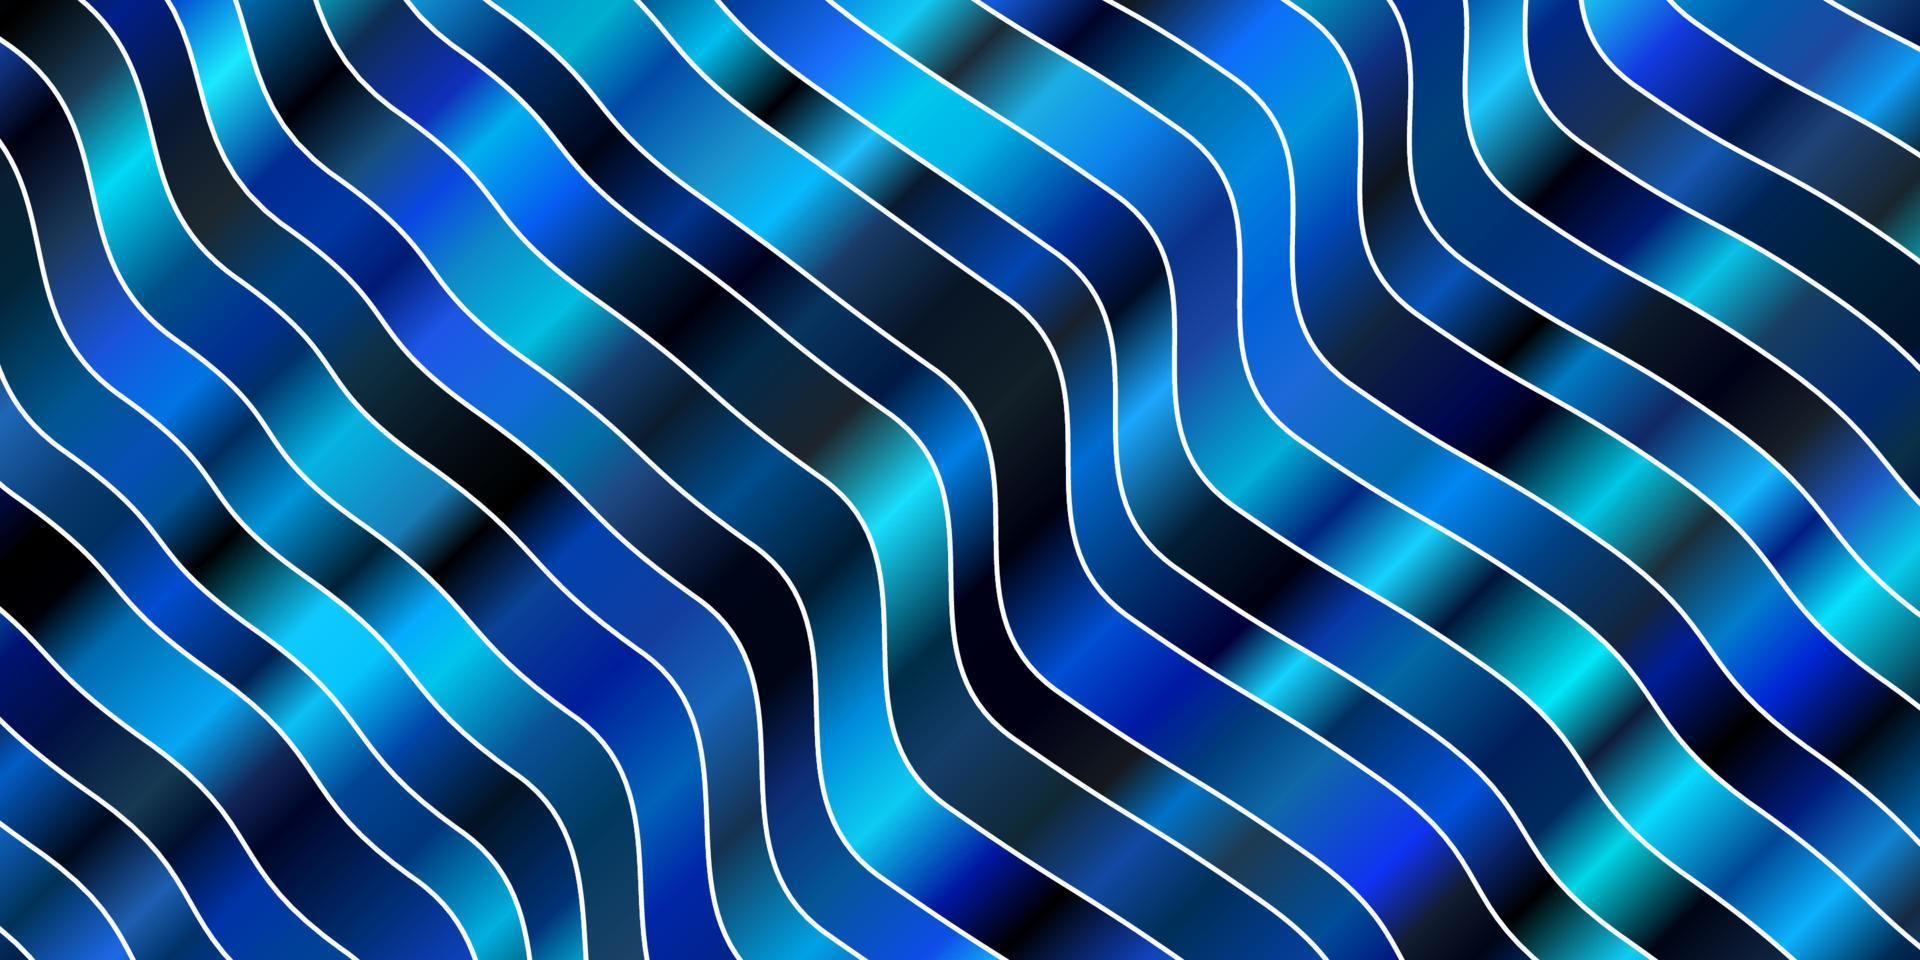 textura vector azul escuro com arco circular.